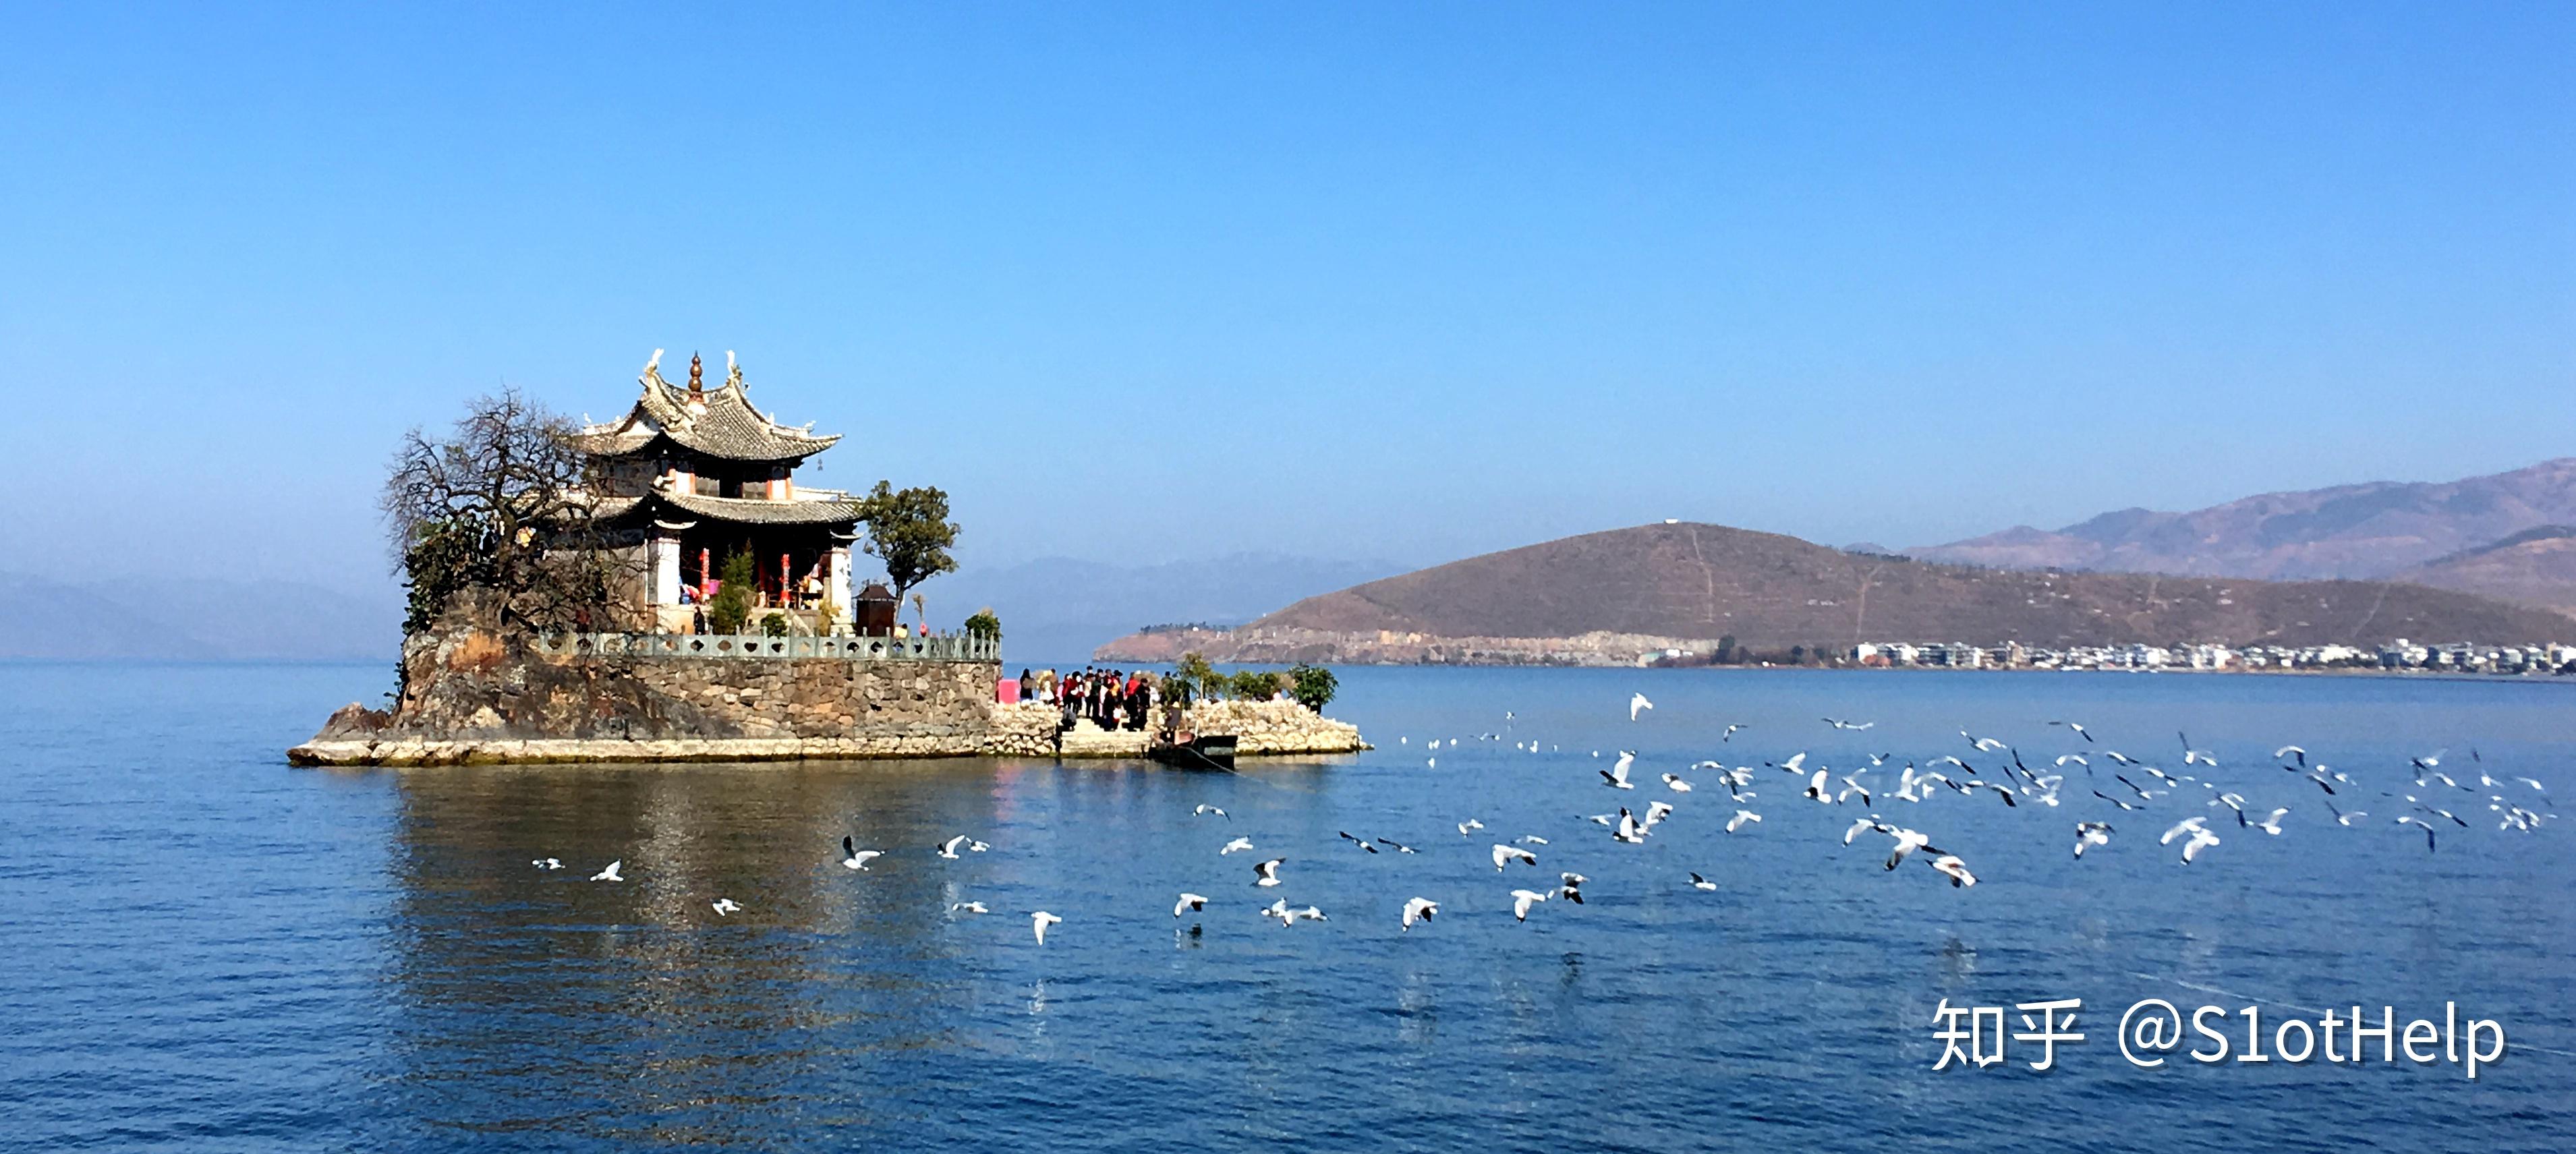 云南自驾游：大理古城、洱海和泸沽湖的秋